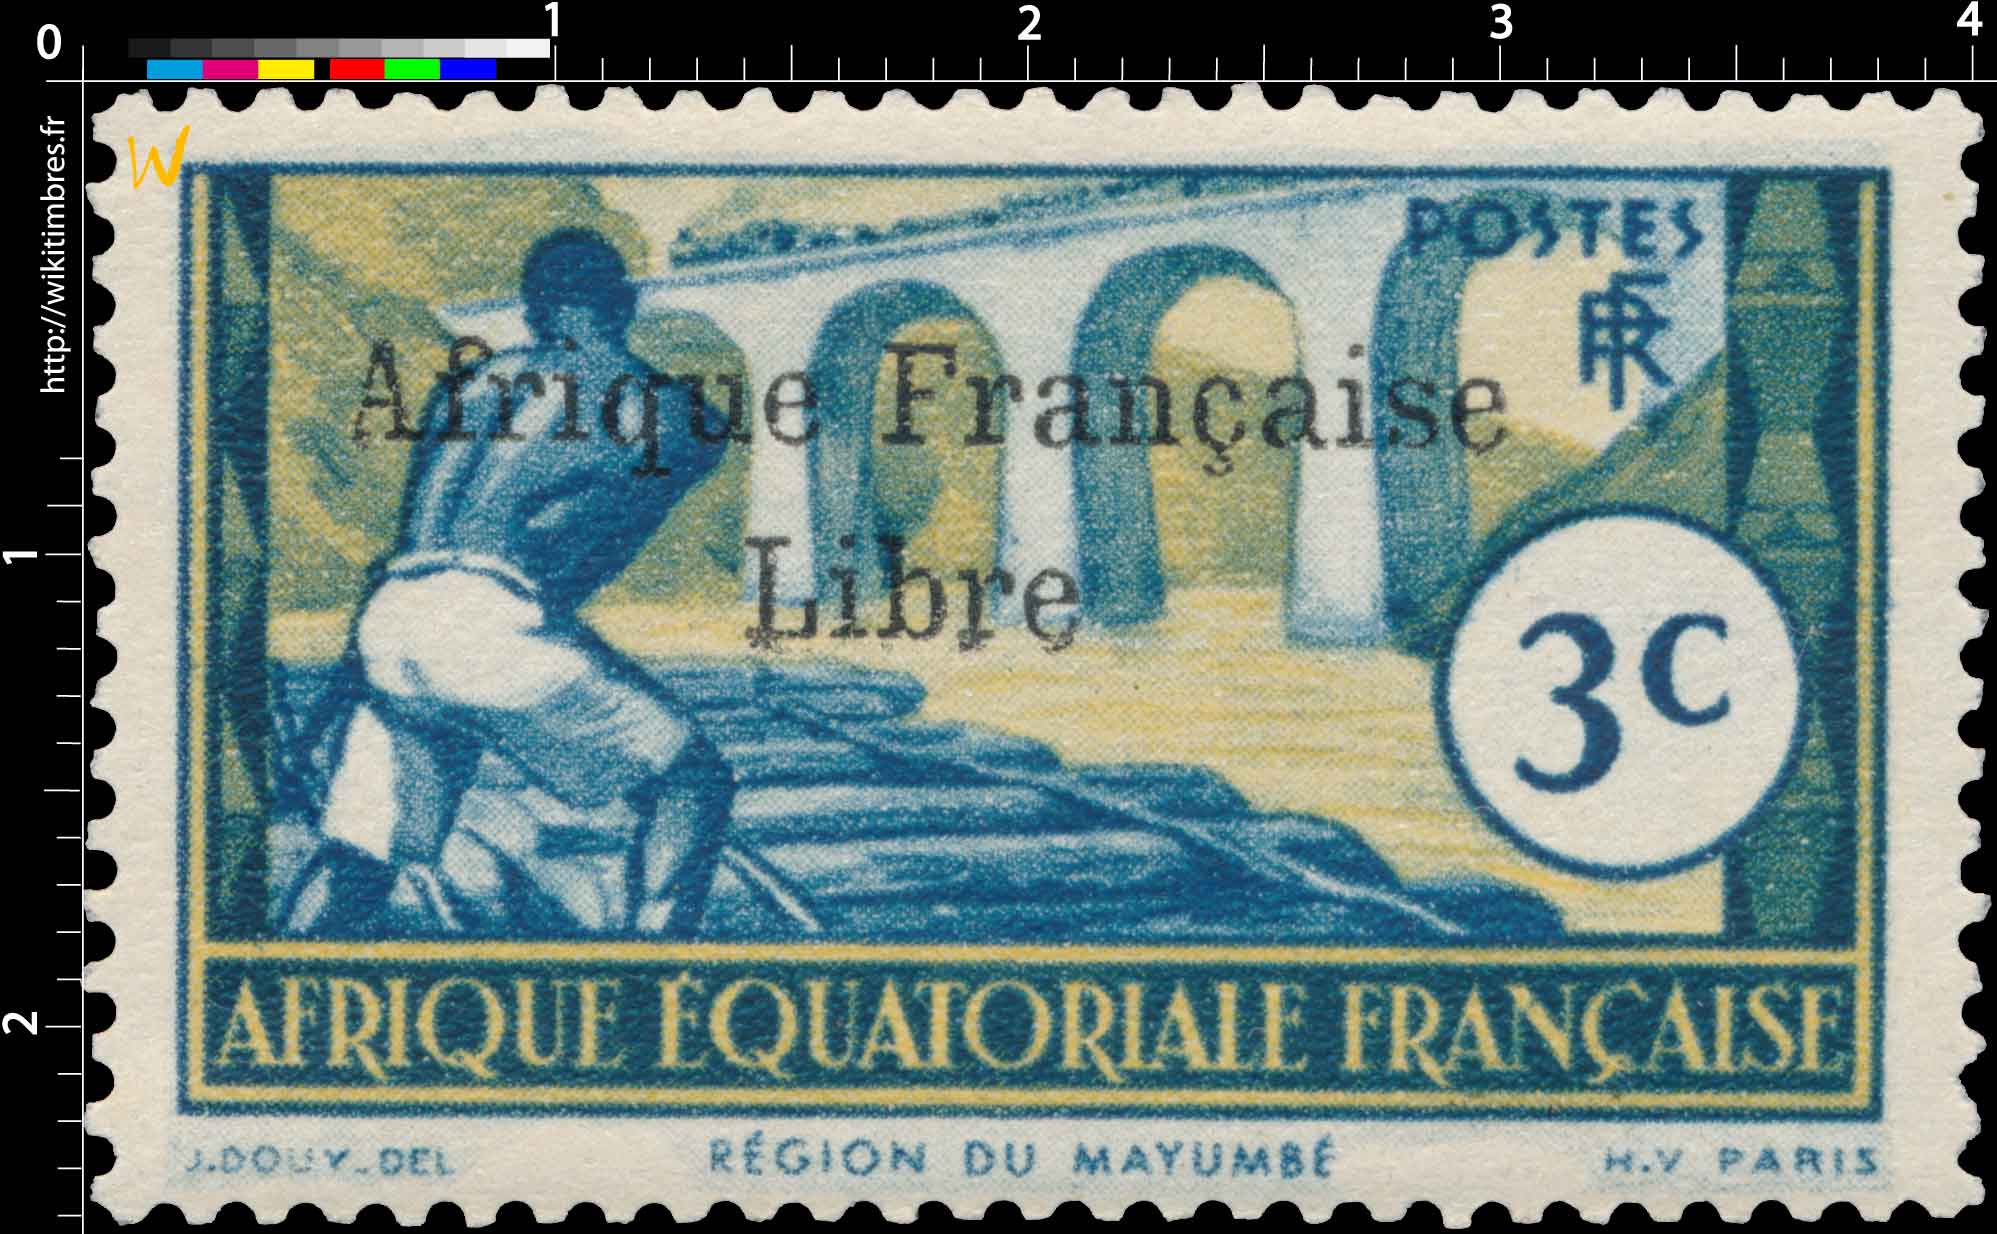 Région du Mayumbé Afrique Équatoriale Française